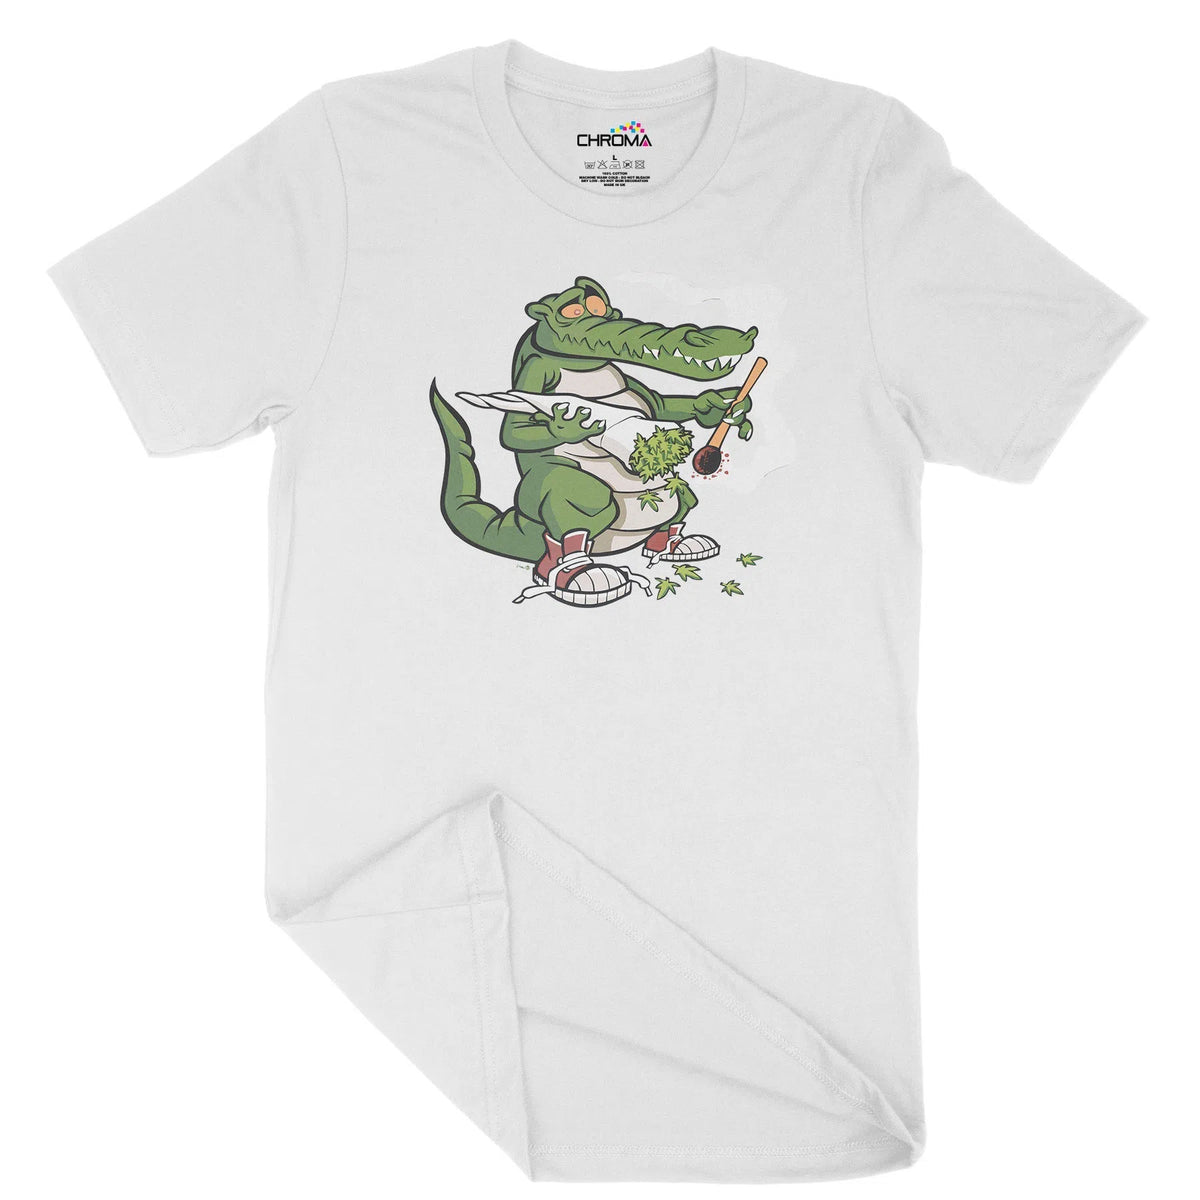 Smoking Croc Unisex Adult T-Shirt Chroma Clothing